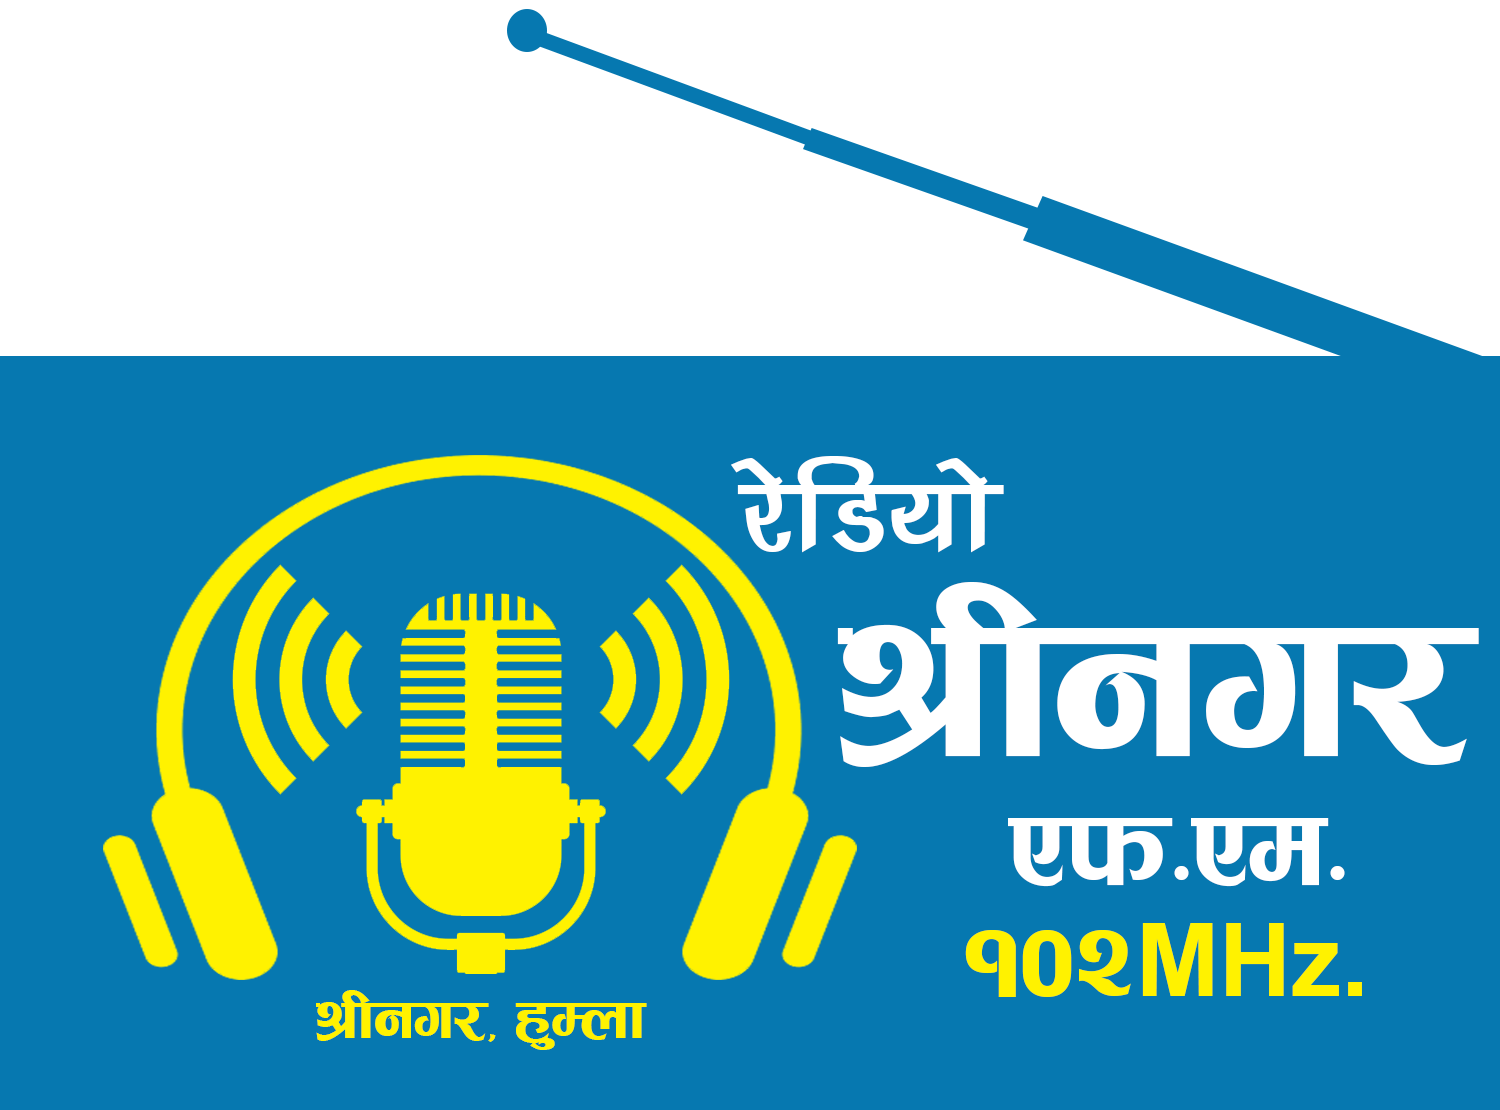 हुम्लाको रेडियो श्रीनगरले भोली आफ्नो आठौ बार्षिक उत्सब मनाउँदै